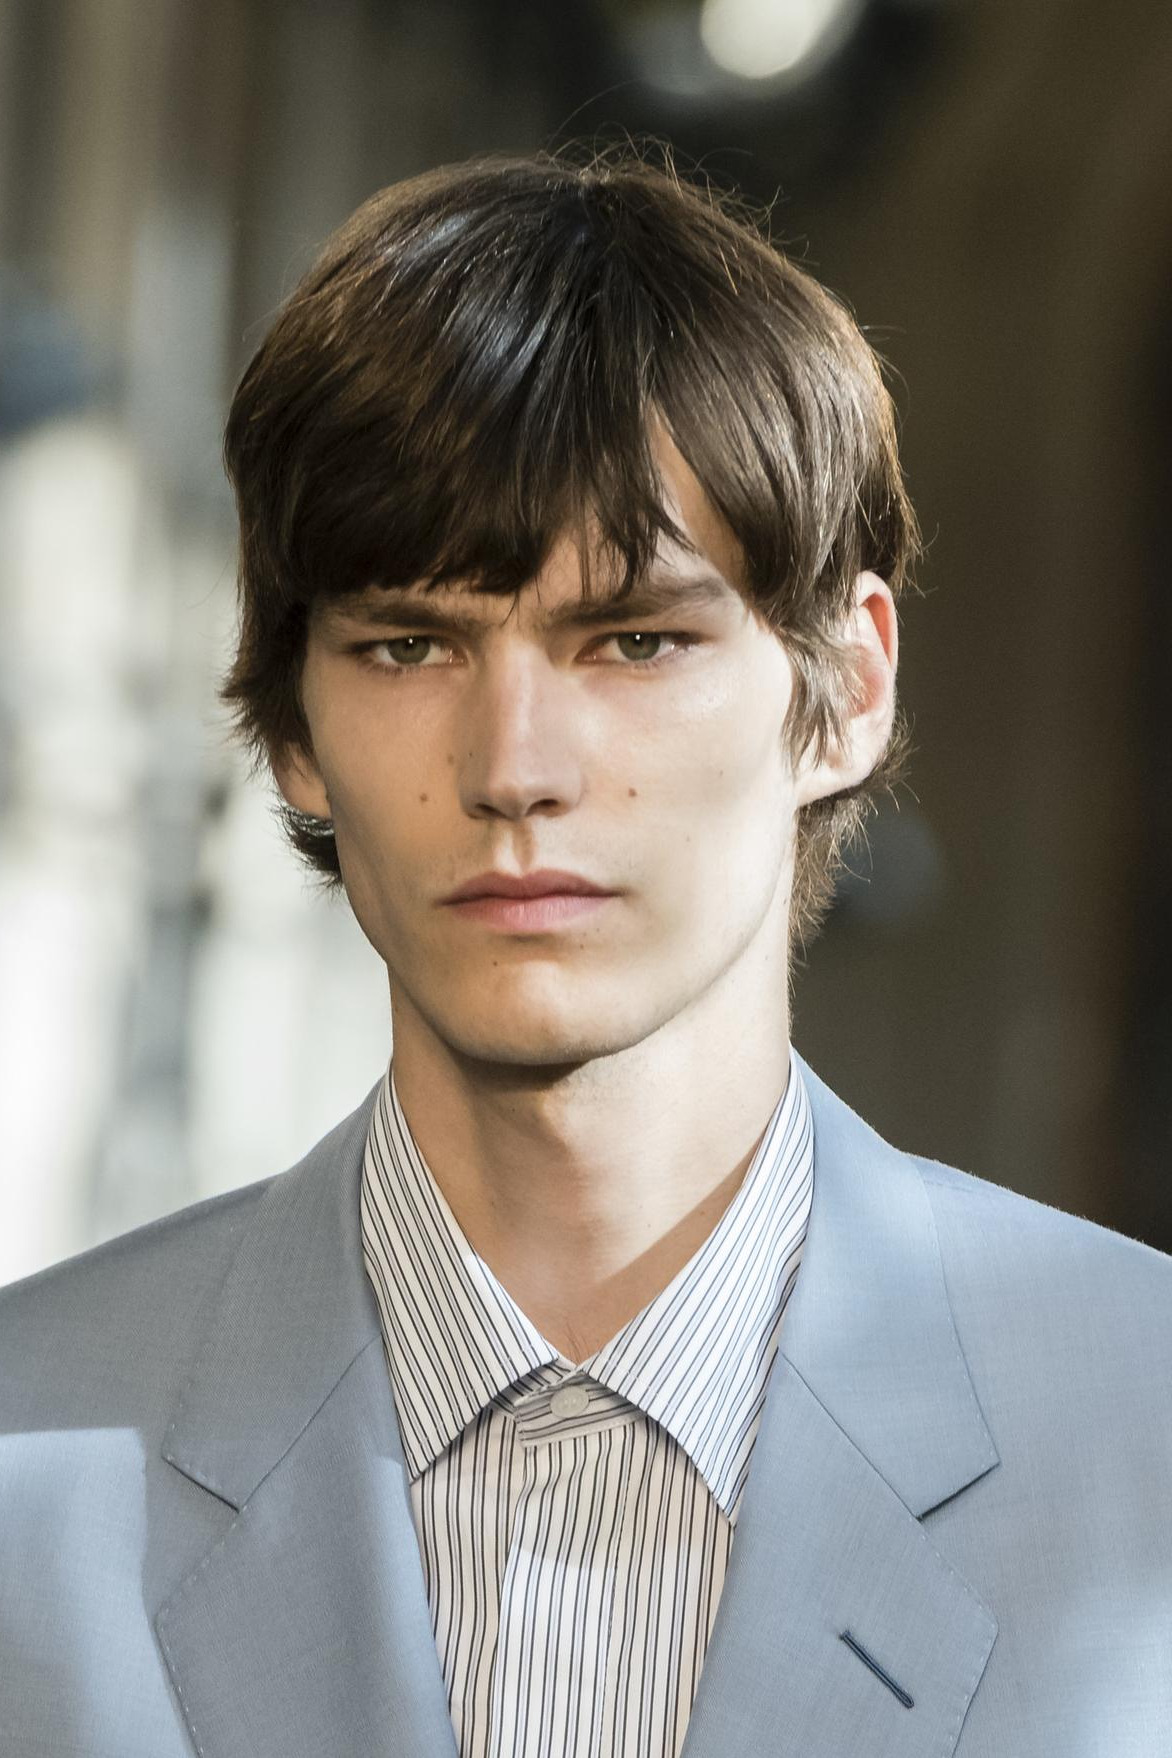 Classify Belgian male model Elias de Poot